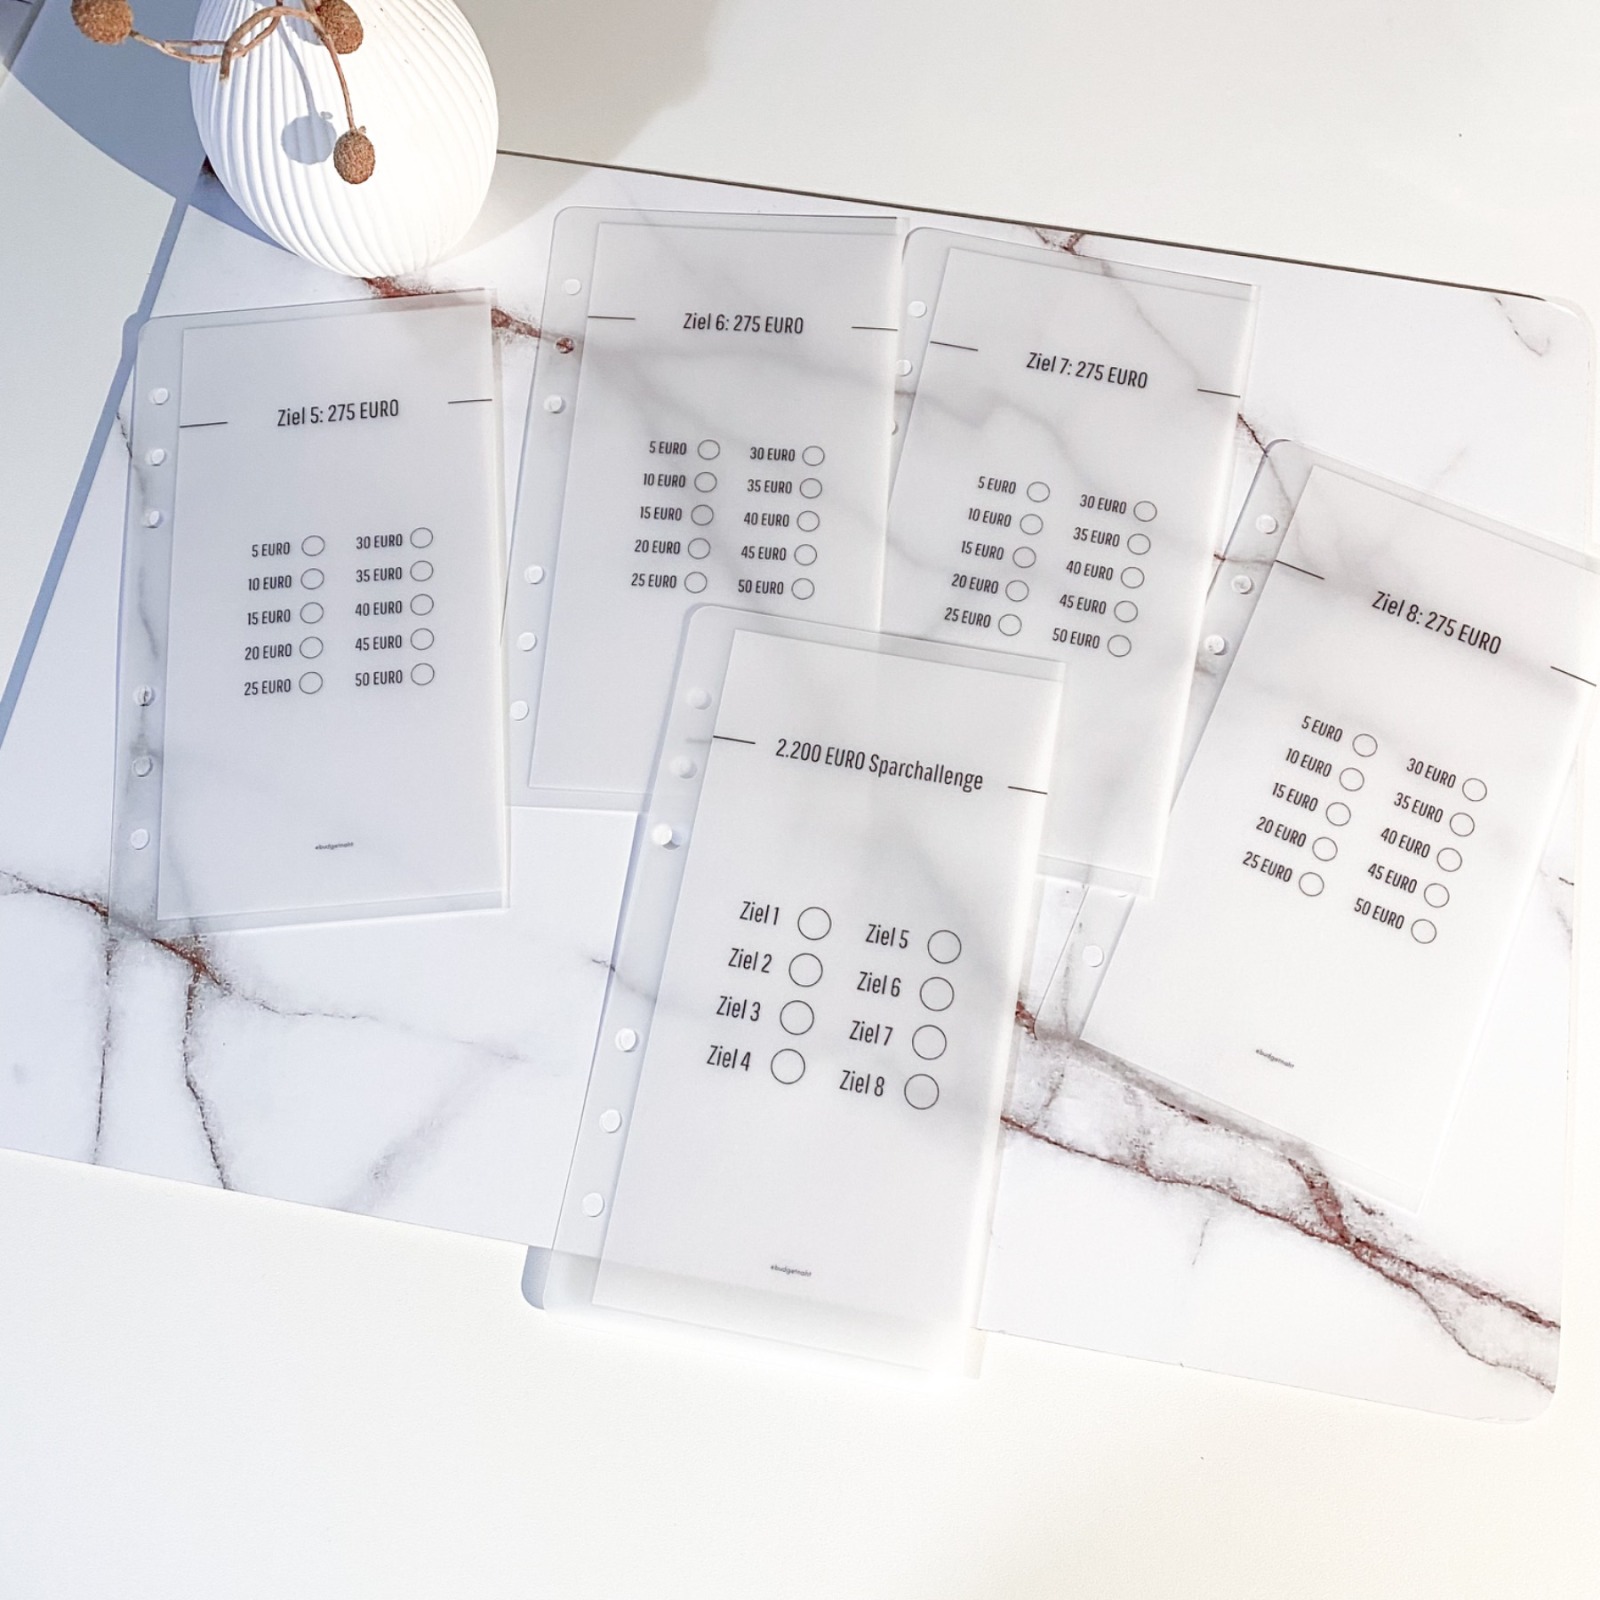 2.200 Umschlag Sparchallenge A6 | frosty Design 9